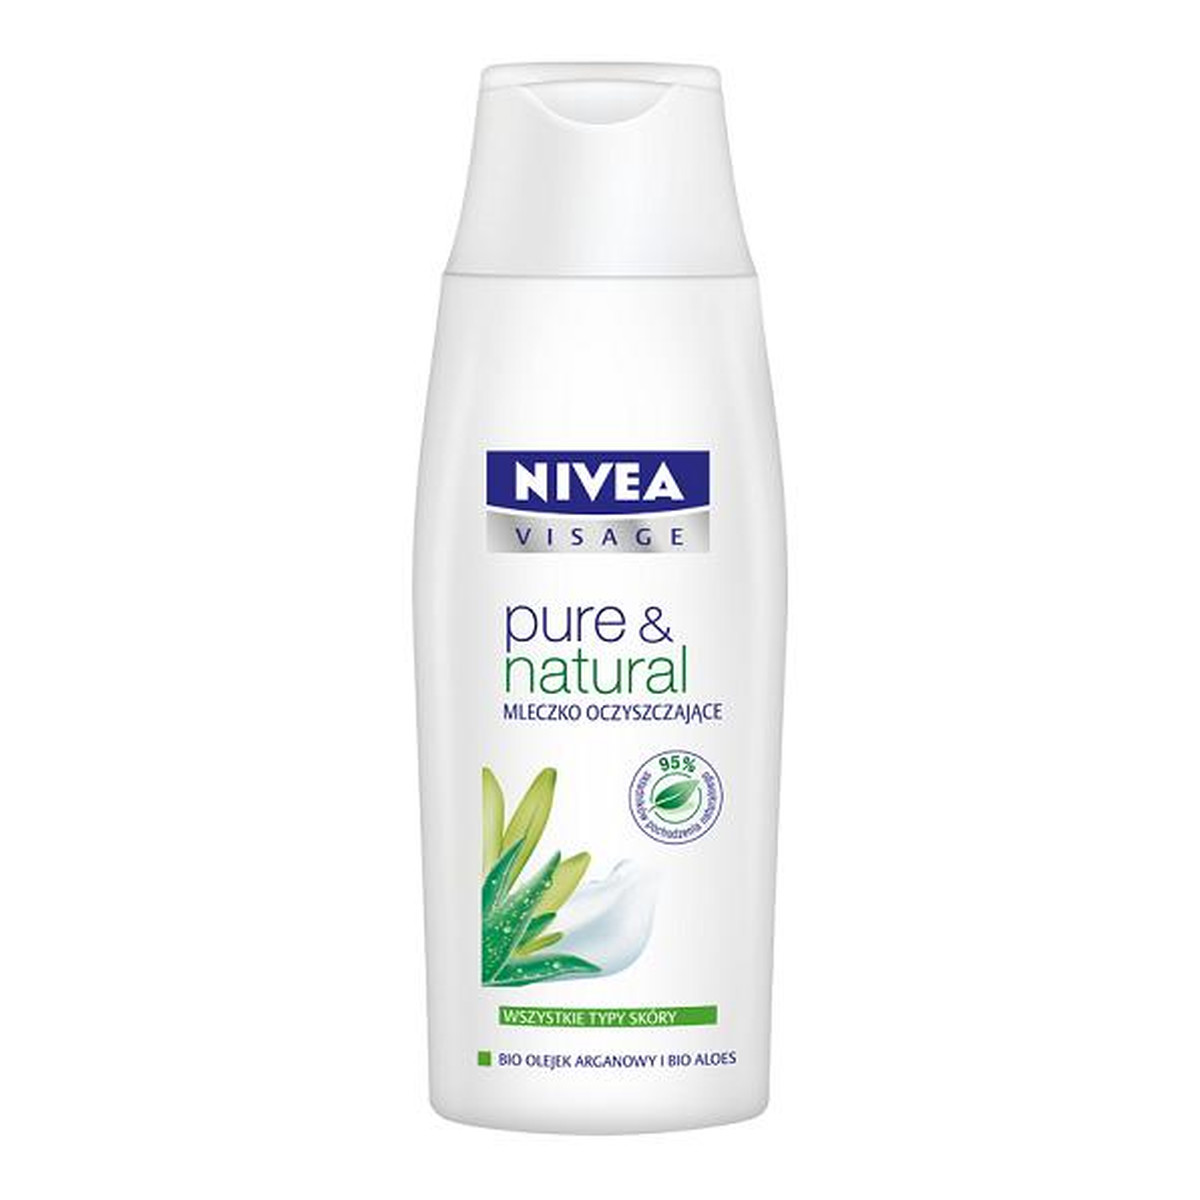 Nivea Pure & Natural Visage Mleczko Oczyszczające Pure & Natural 200ml